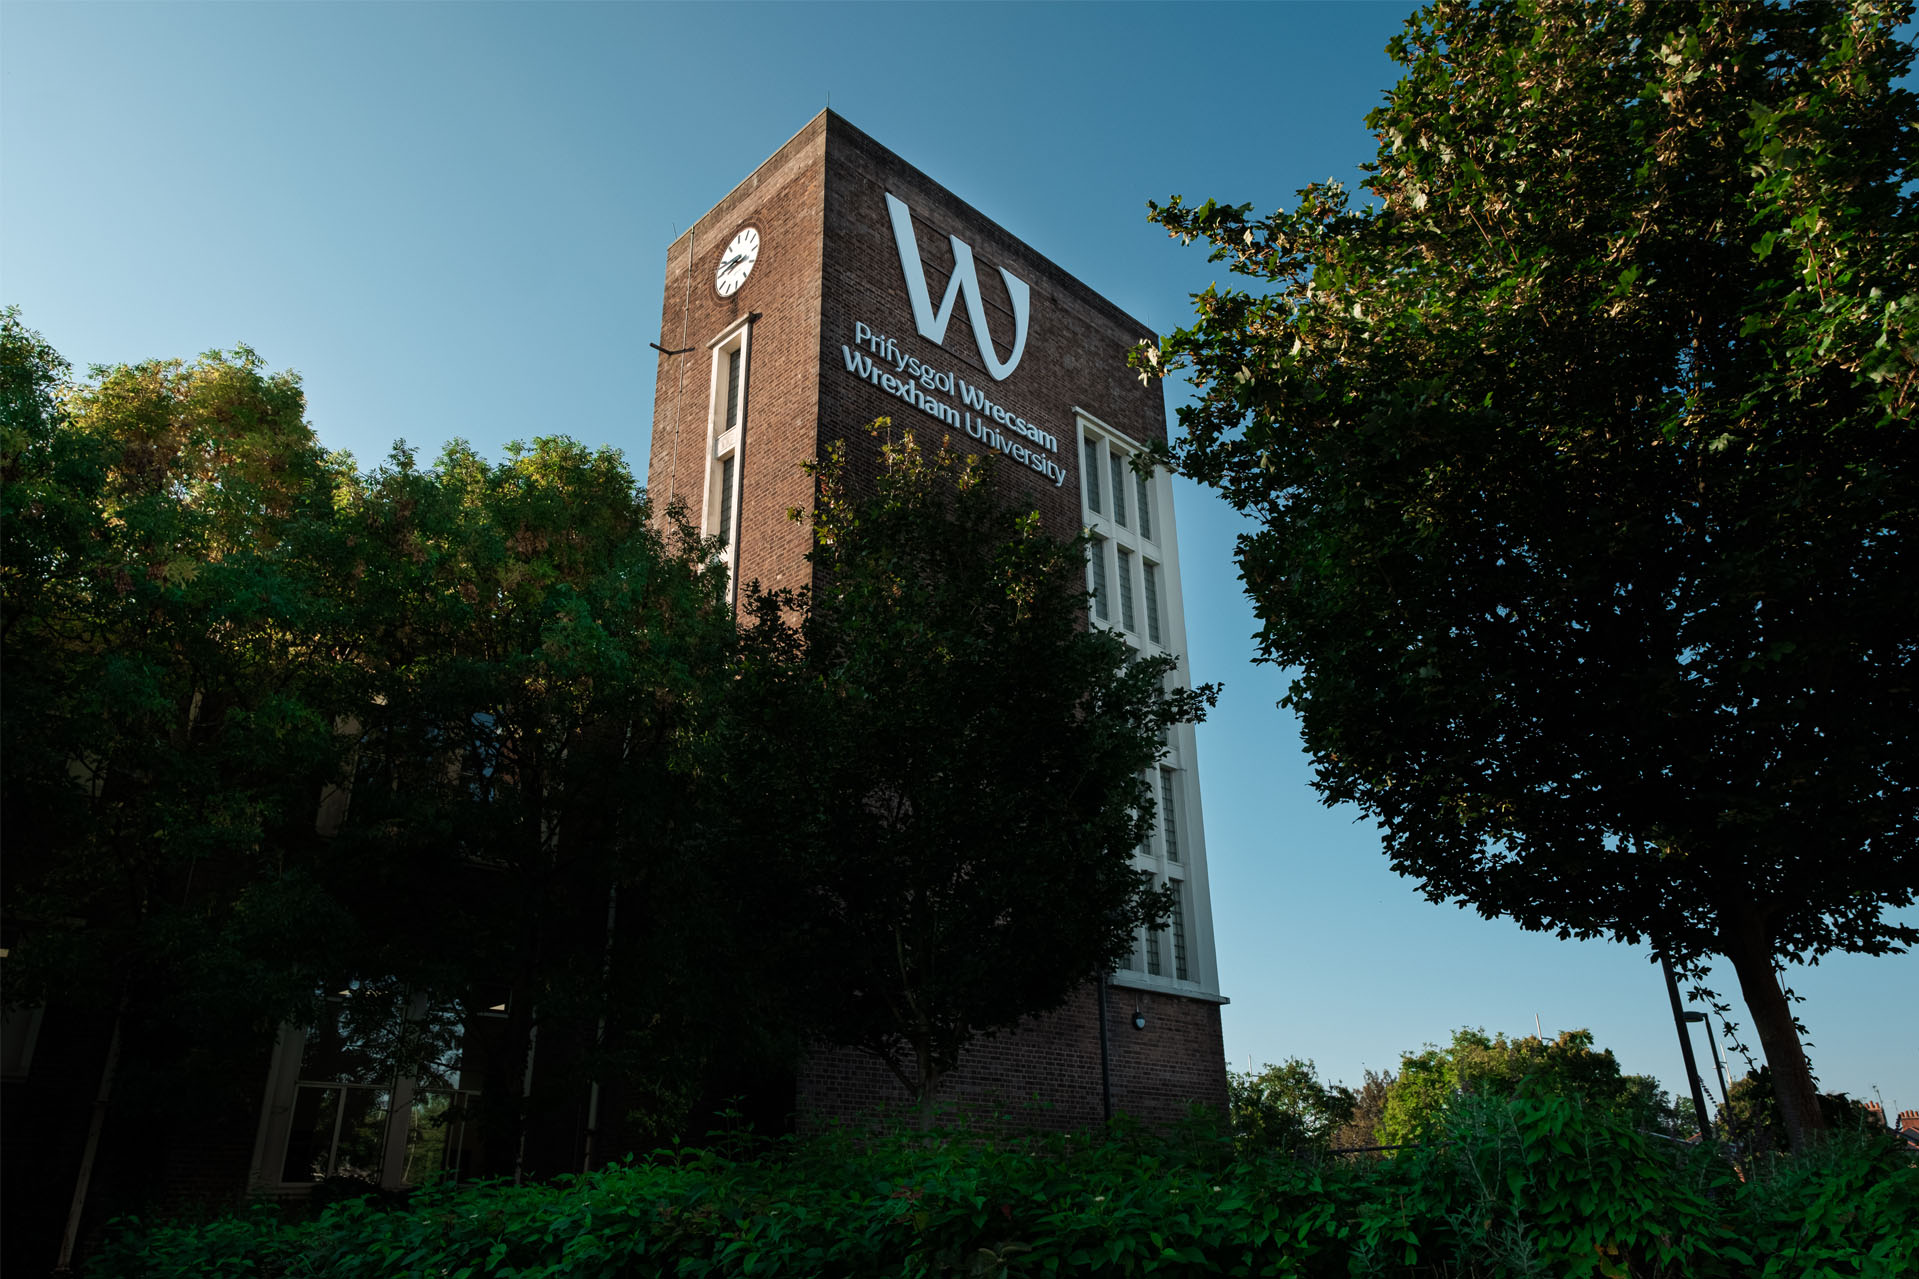 Wrexham University Tower